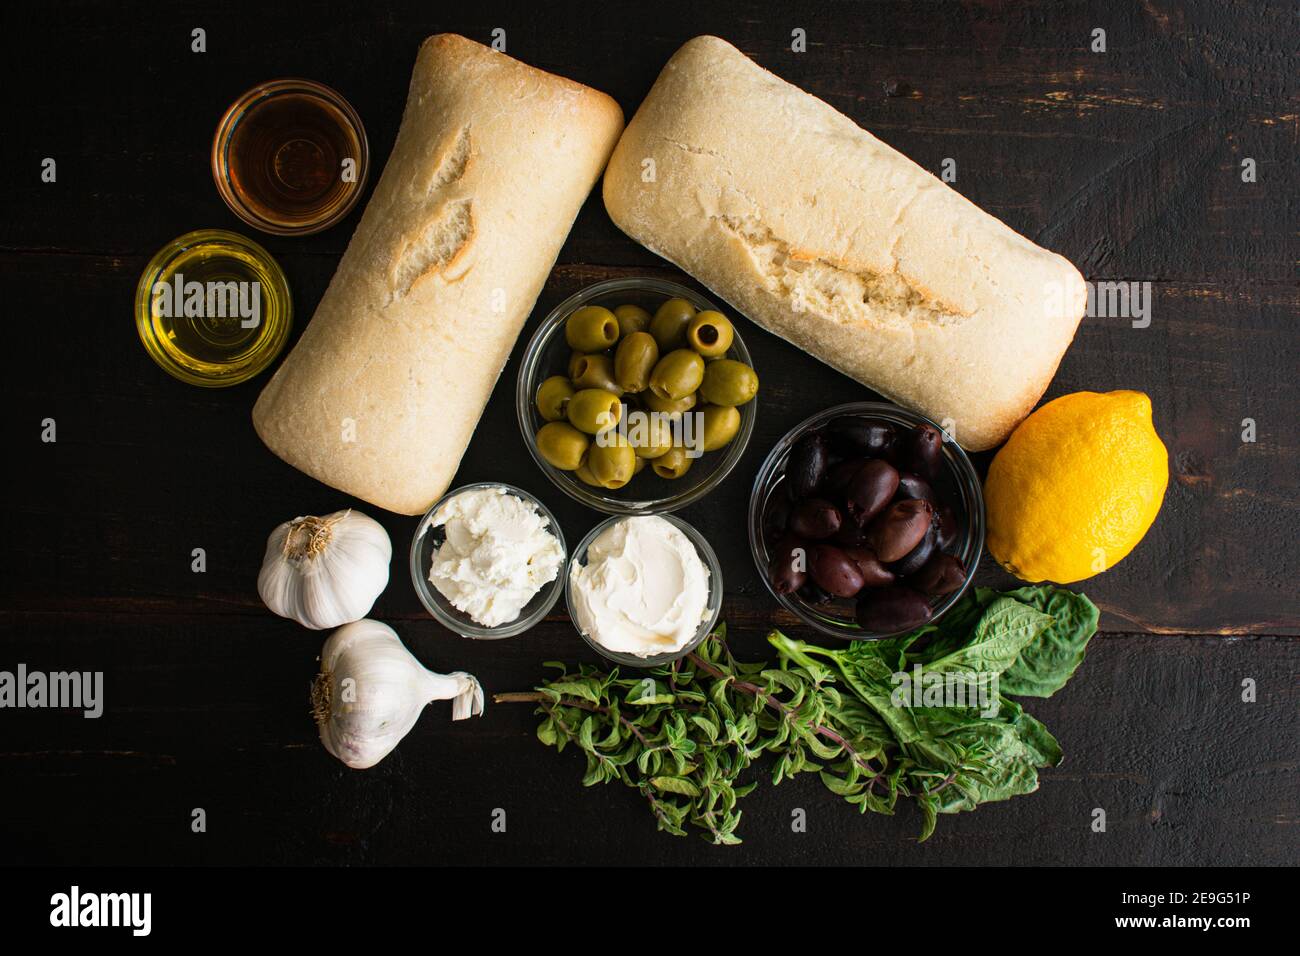 Tapenade aux olives herbés au fromage de chèvre Bruschetta Ingrédients: Olives, fromage, herbes et autres ingrédients d'apéritif Banque D'Images